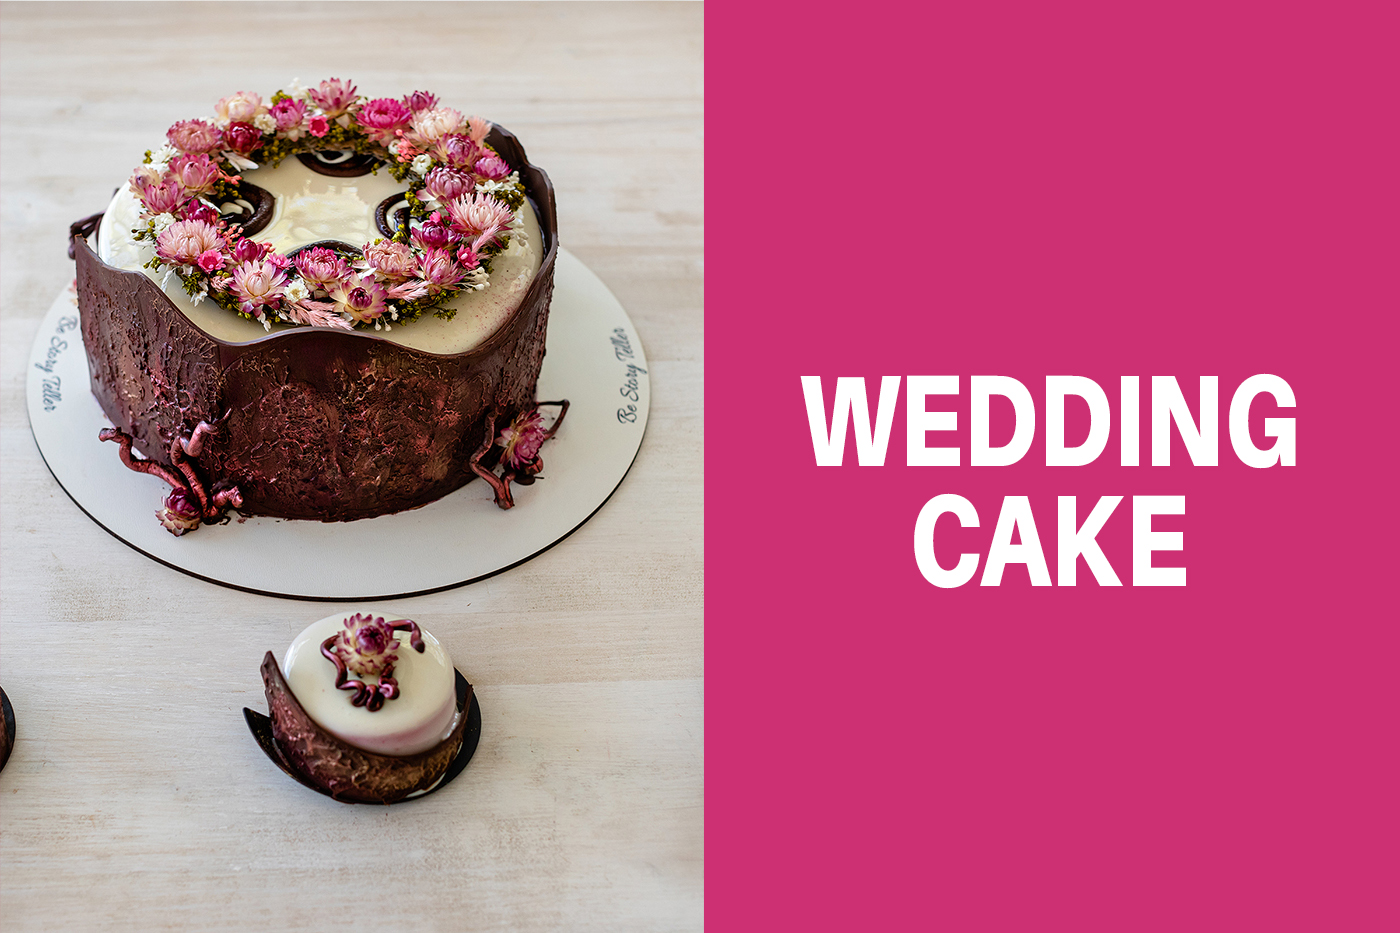 – WEDDING CAKE – Tort cu brâu din ciocolată și coroniță de flori